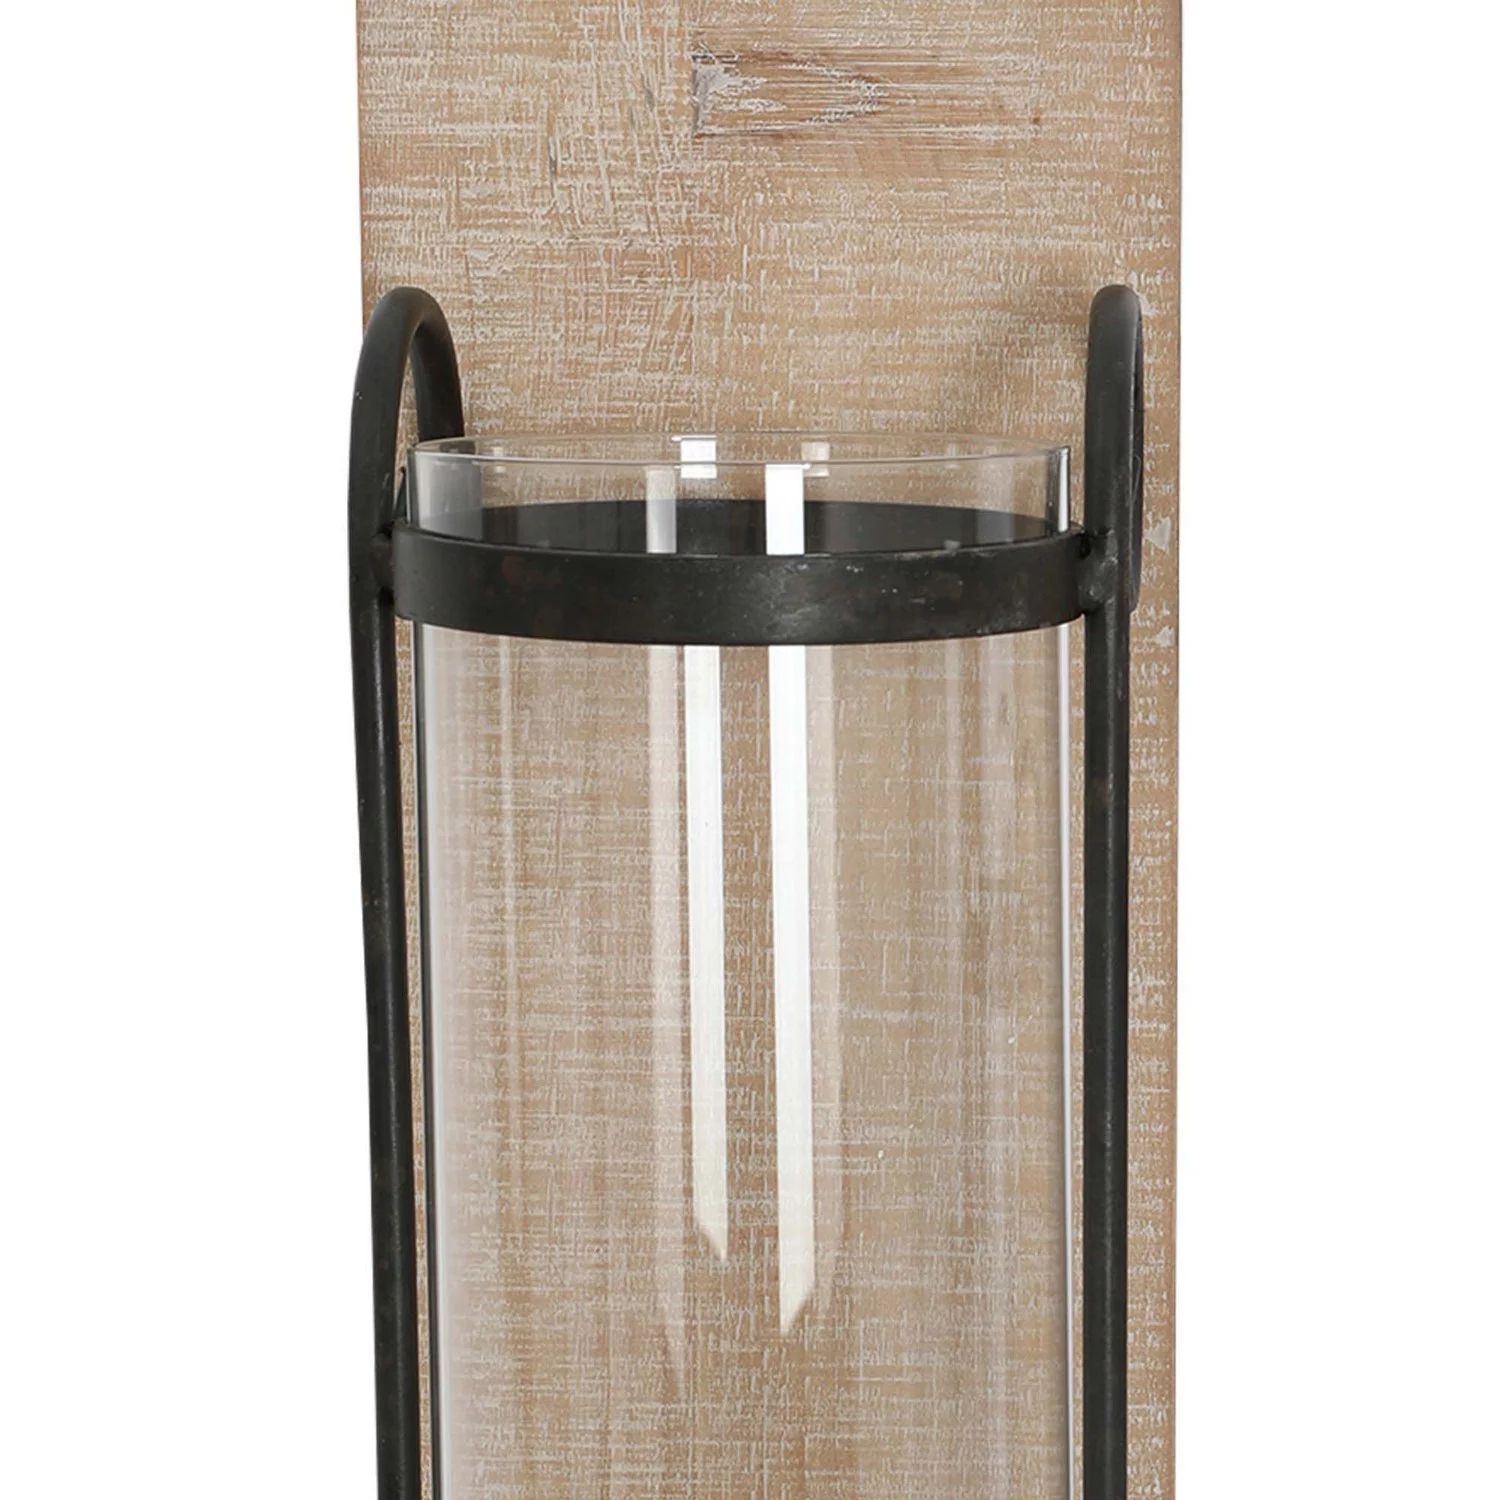 цена 21-дюймовый промышленный настенный деревянный подсвечник со стеклянным ураганом, набор из 2 шт., черный